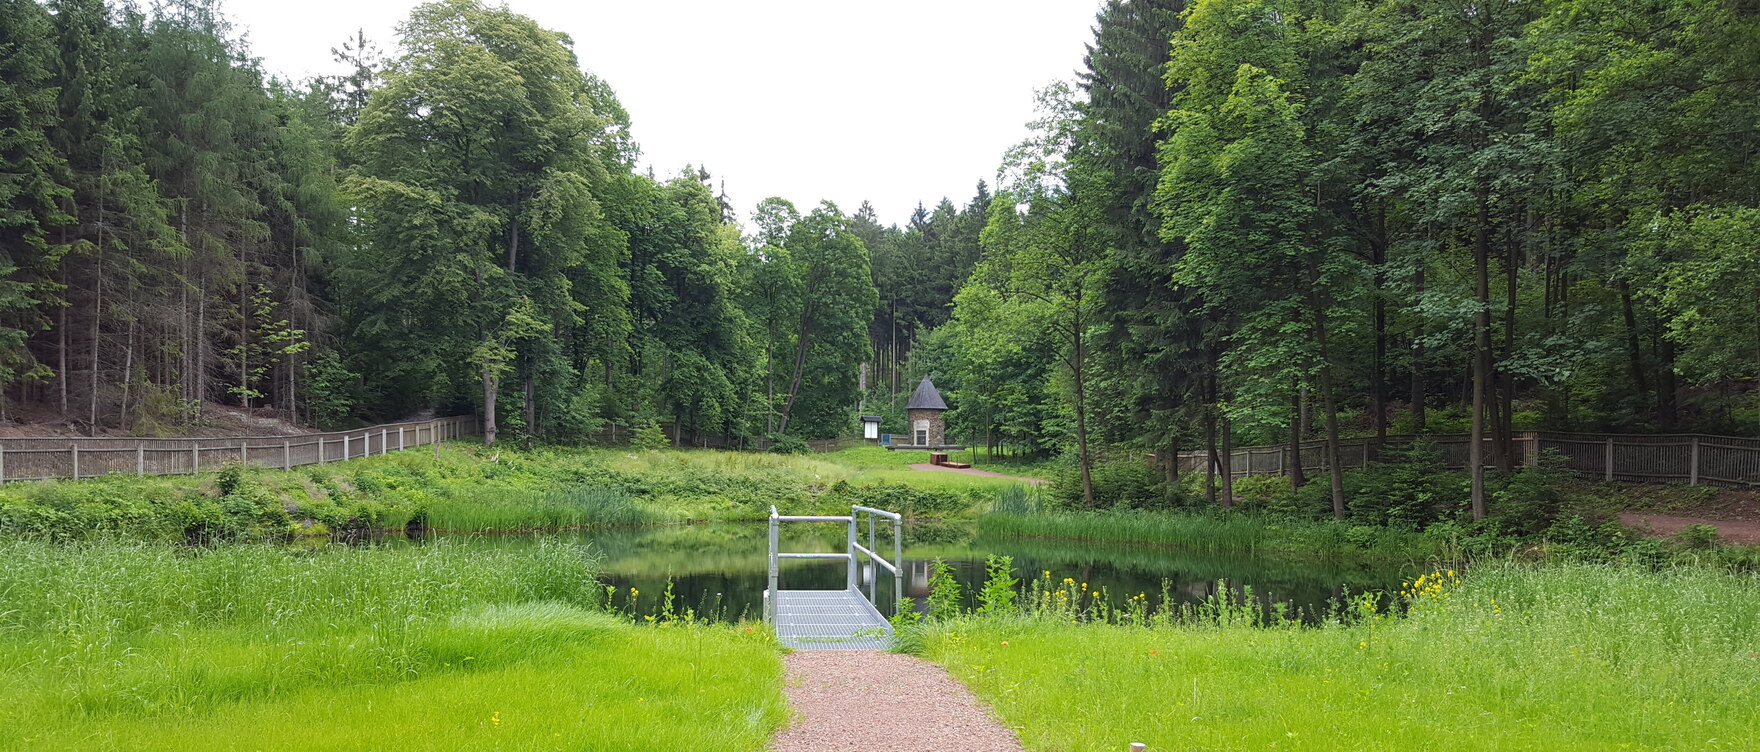 Blick auf einen Teich im Grünen, im Hintergrund Wald